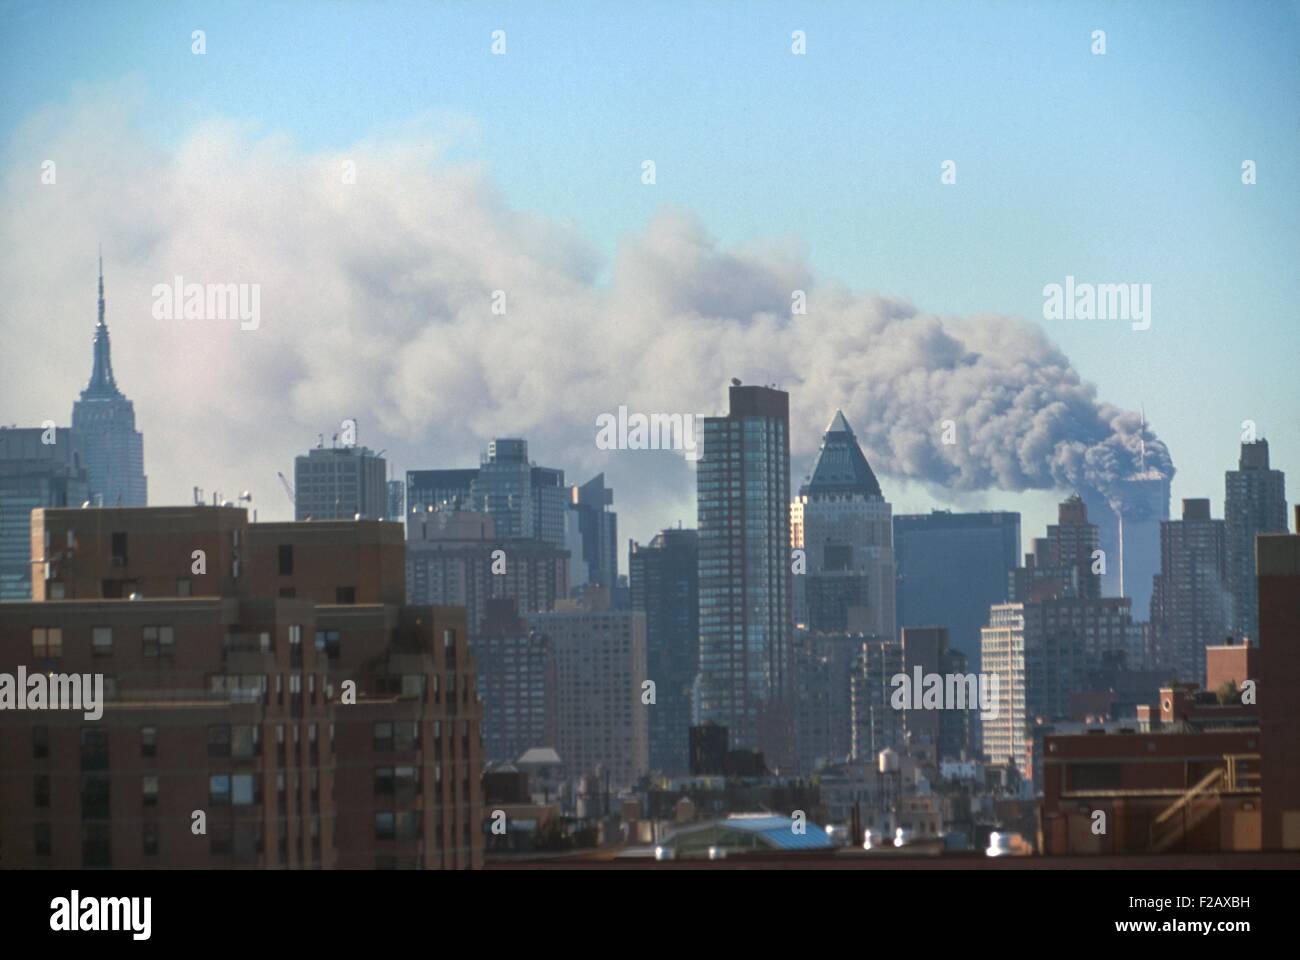 La fumée s'échapper de la Twin Towers après le 11 septembre, attaque terroriste du World Trade Center. Photo prise à partir de l'ouest, près de Midtown 60th street dans les 72 premières minutes de l'attaque. La ville de New York, le 11 septembre 2001. (BSLOC 2015 2 39) Banque D'Images